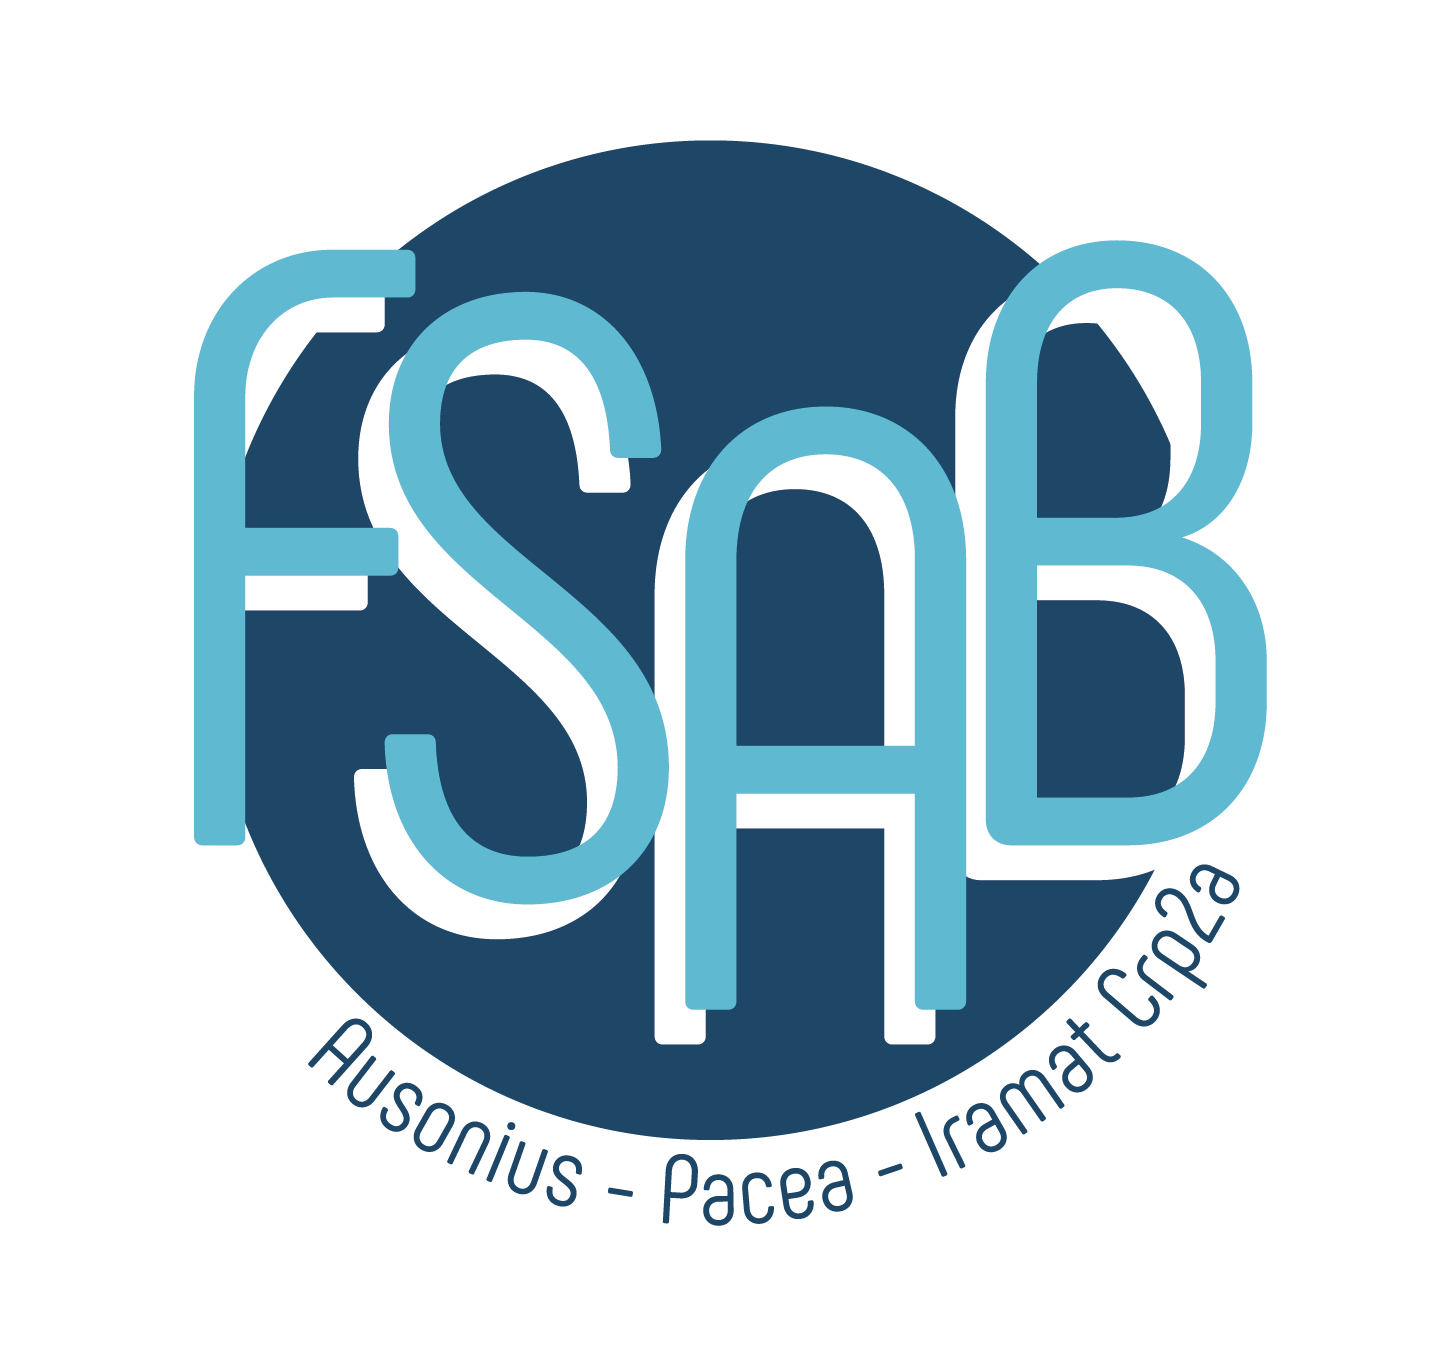 FSAB logo